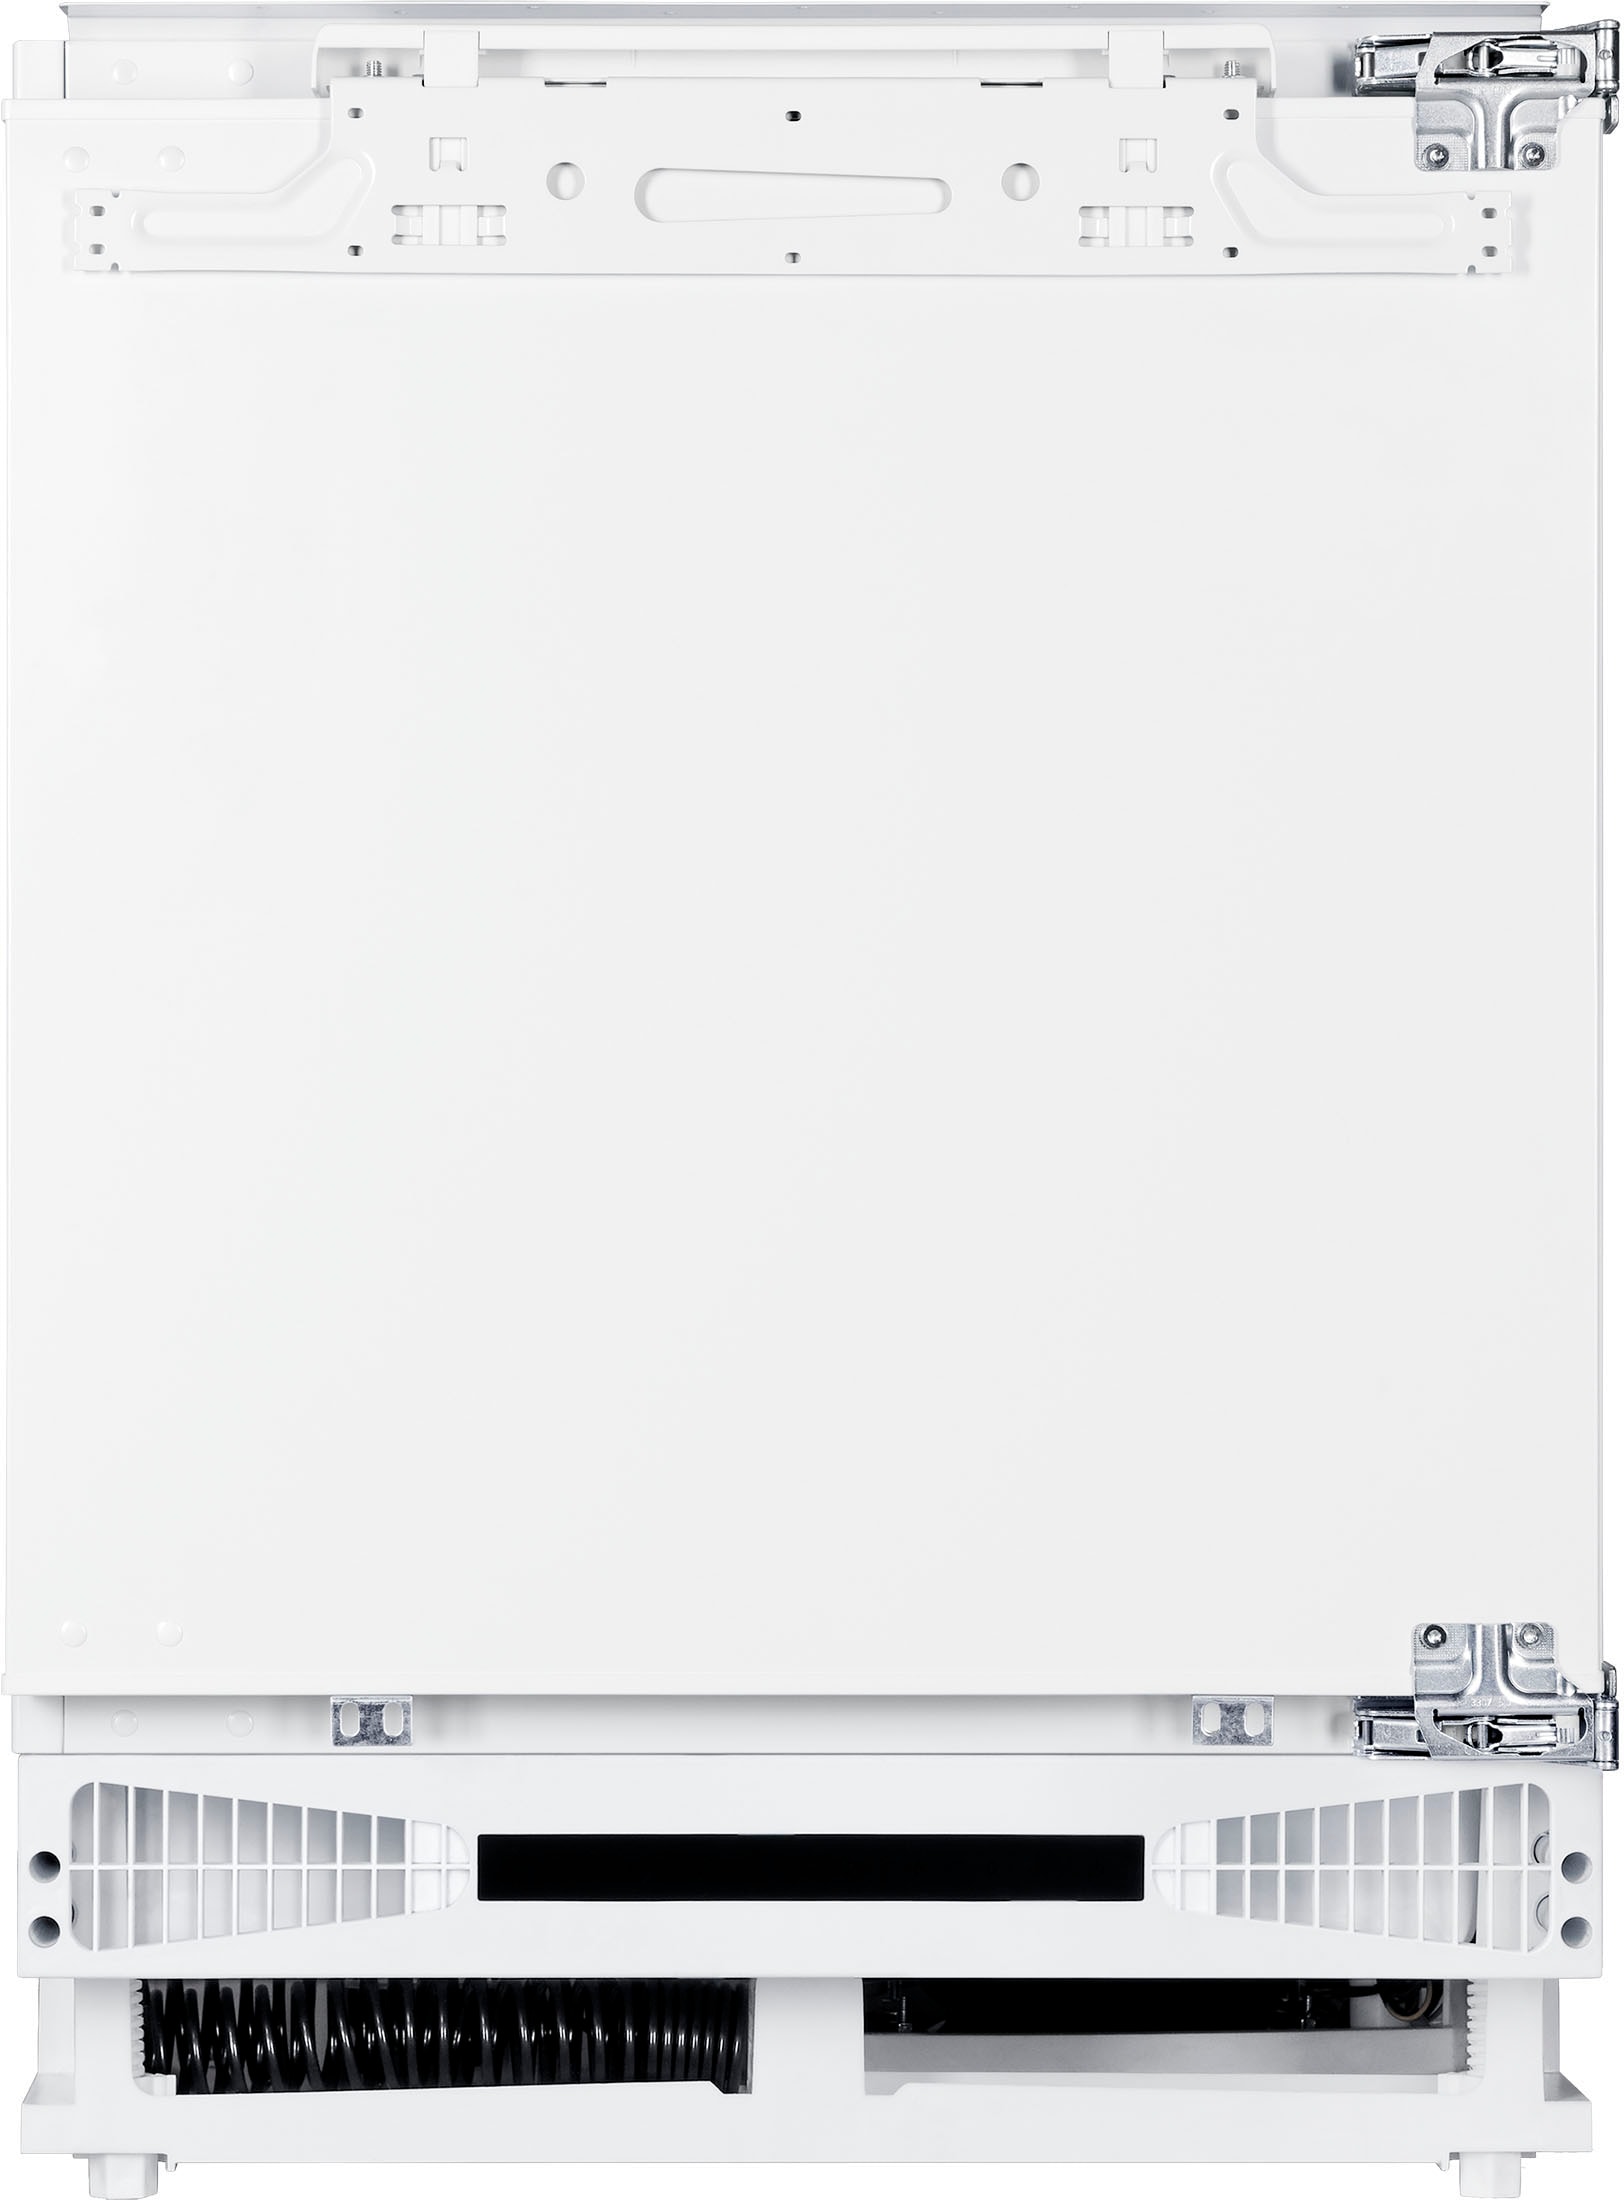 Amica Einbaukühlschrank, UKSX 361 900, 81,8 cm hoch, 59,6 cm breit kaufen